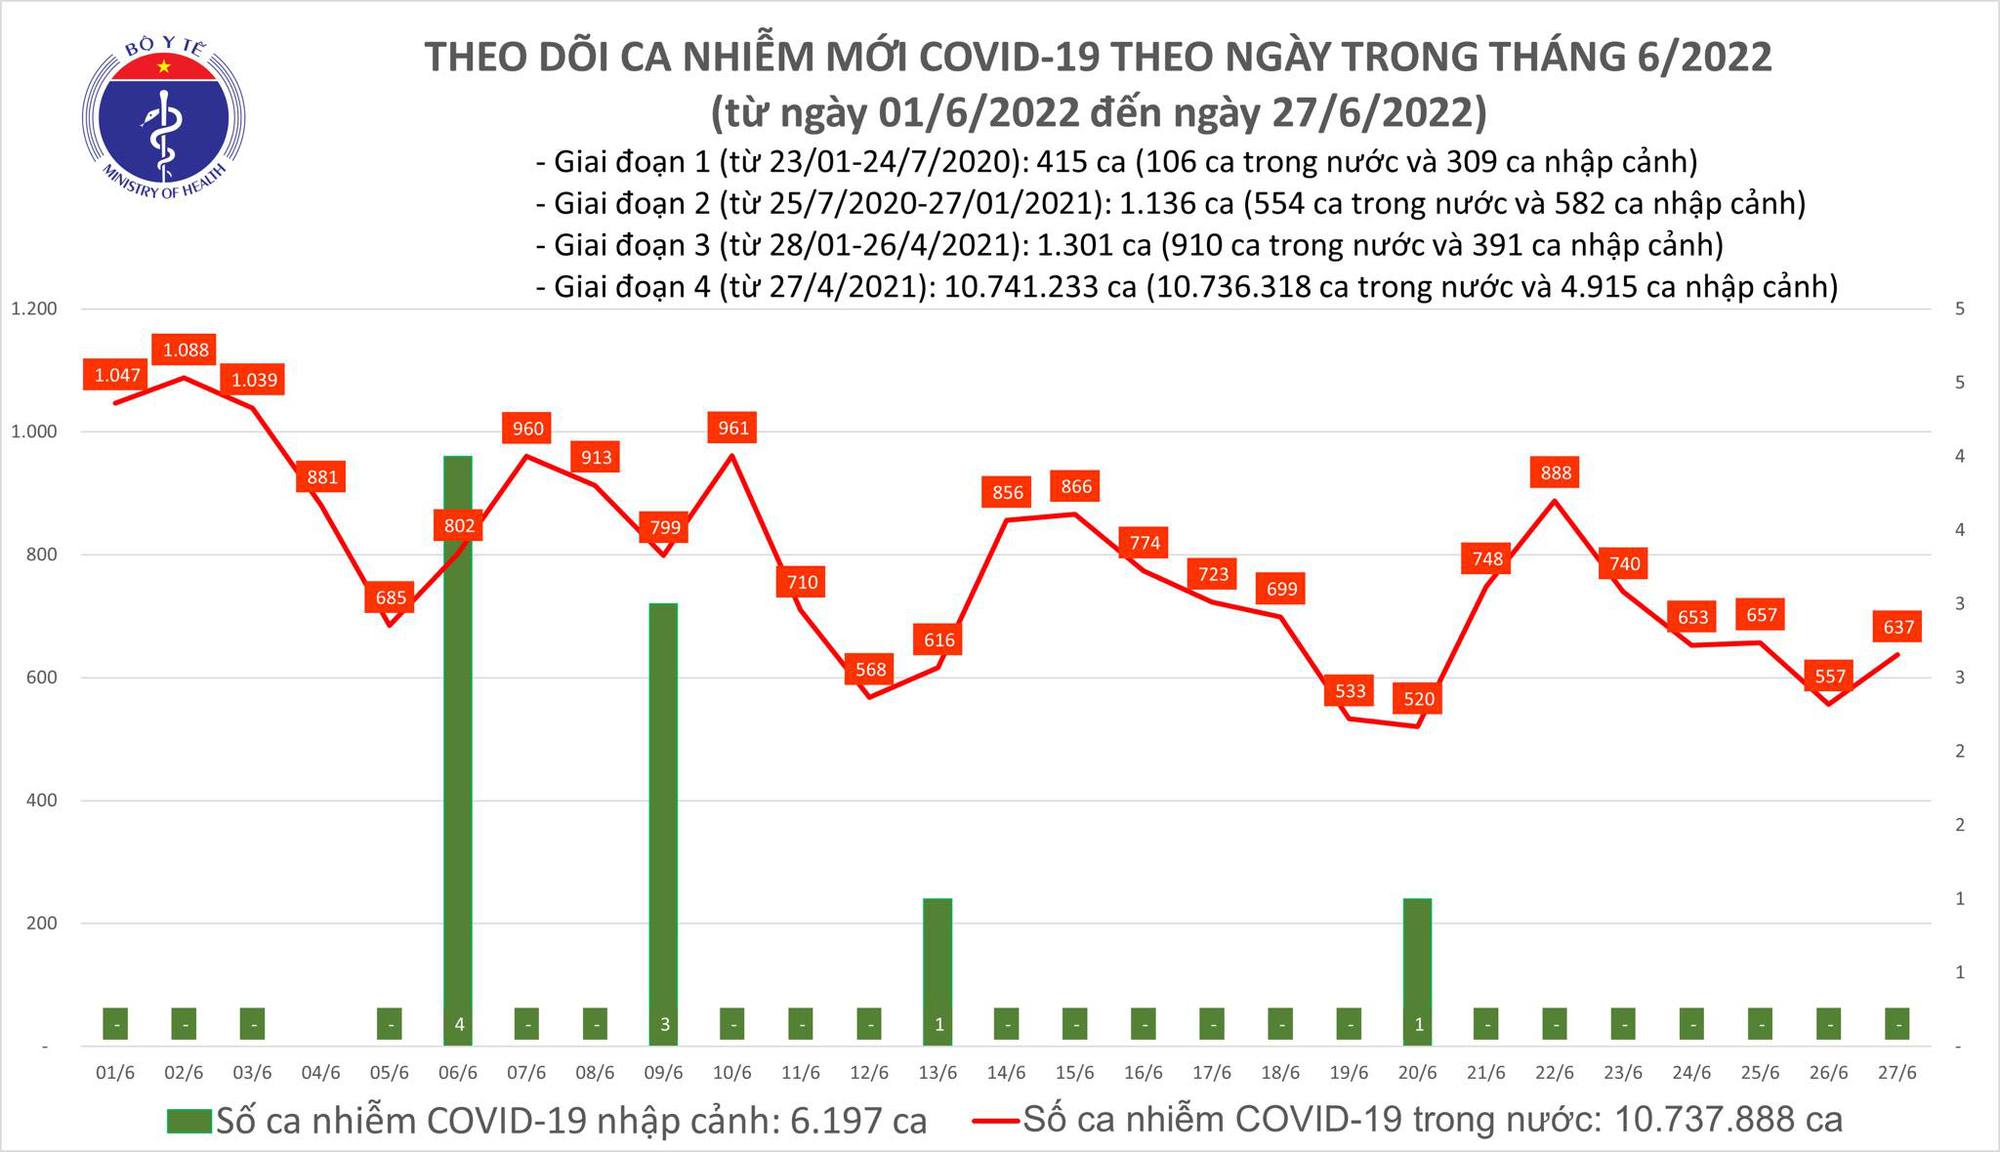 Ngày 27/6: Ca COVID-19 tăng lên, có 637 F0; Bệnh nhân nặng thấp nhất trong 12 tháng-1